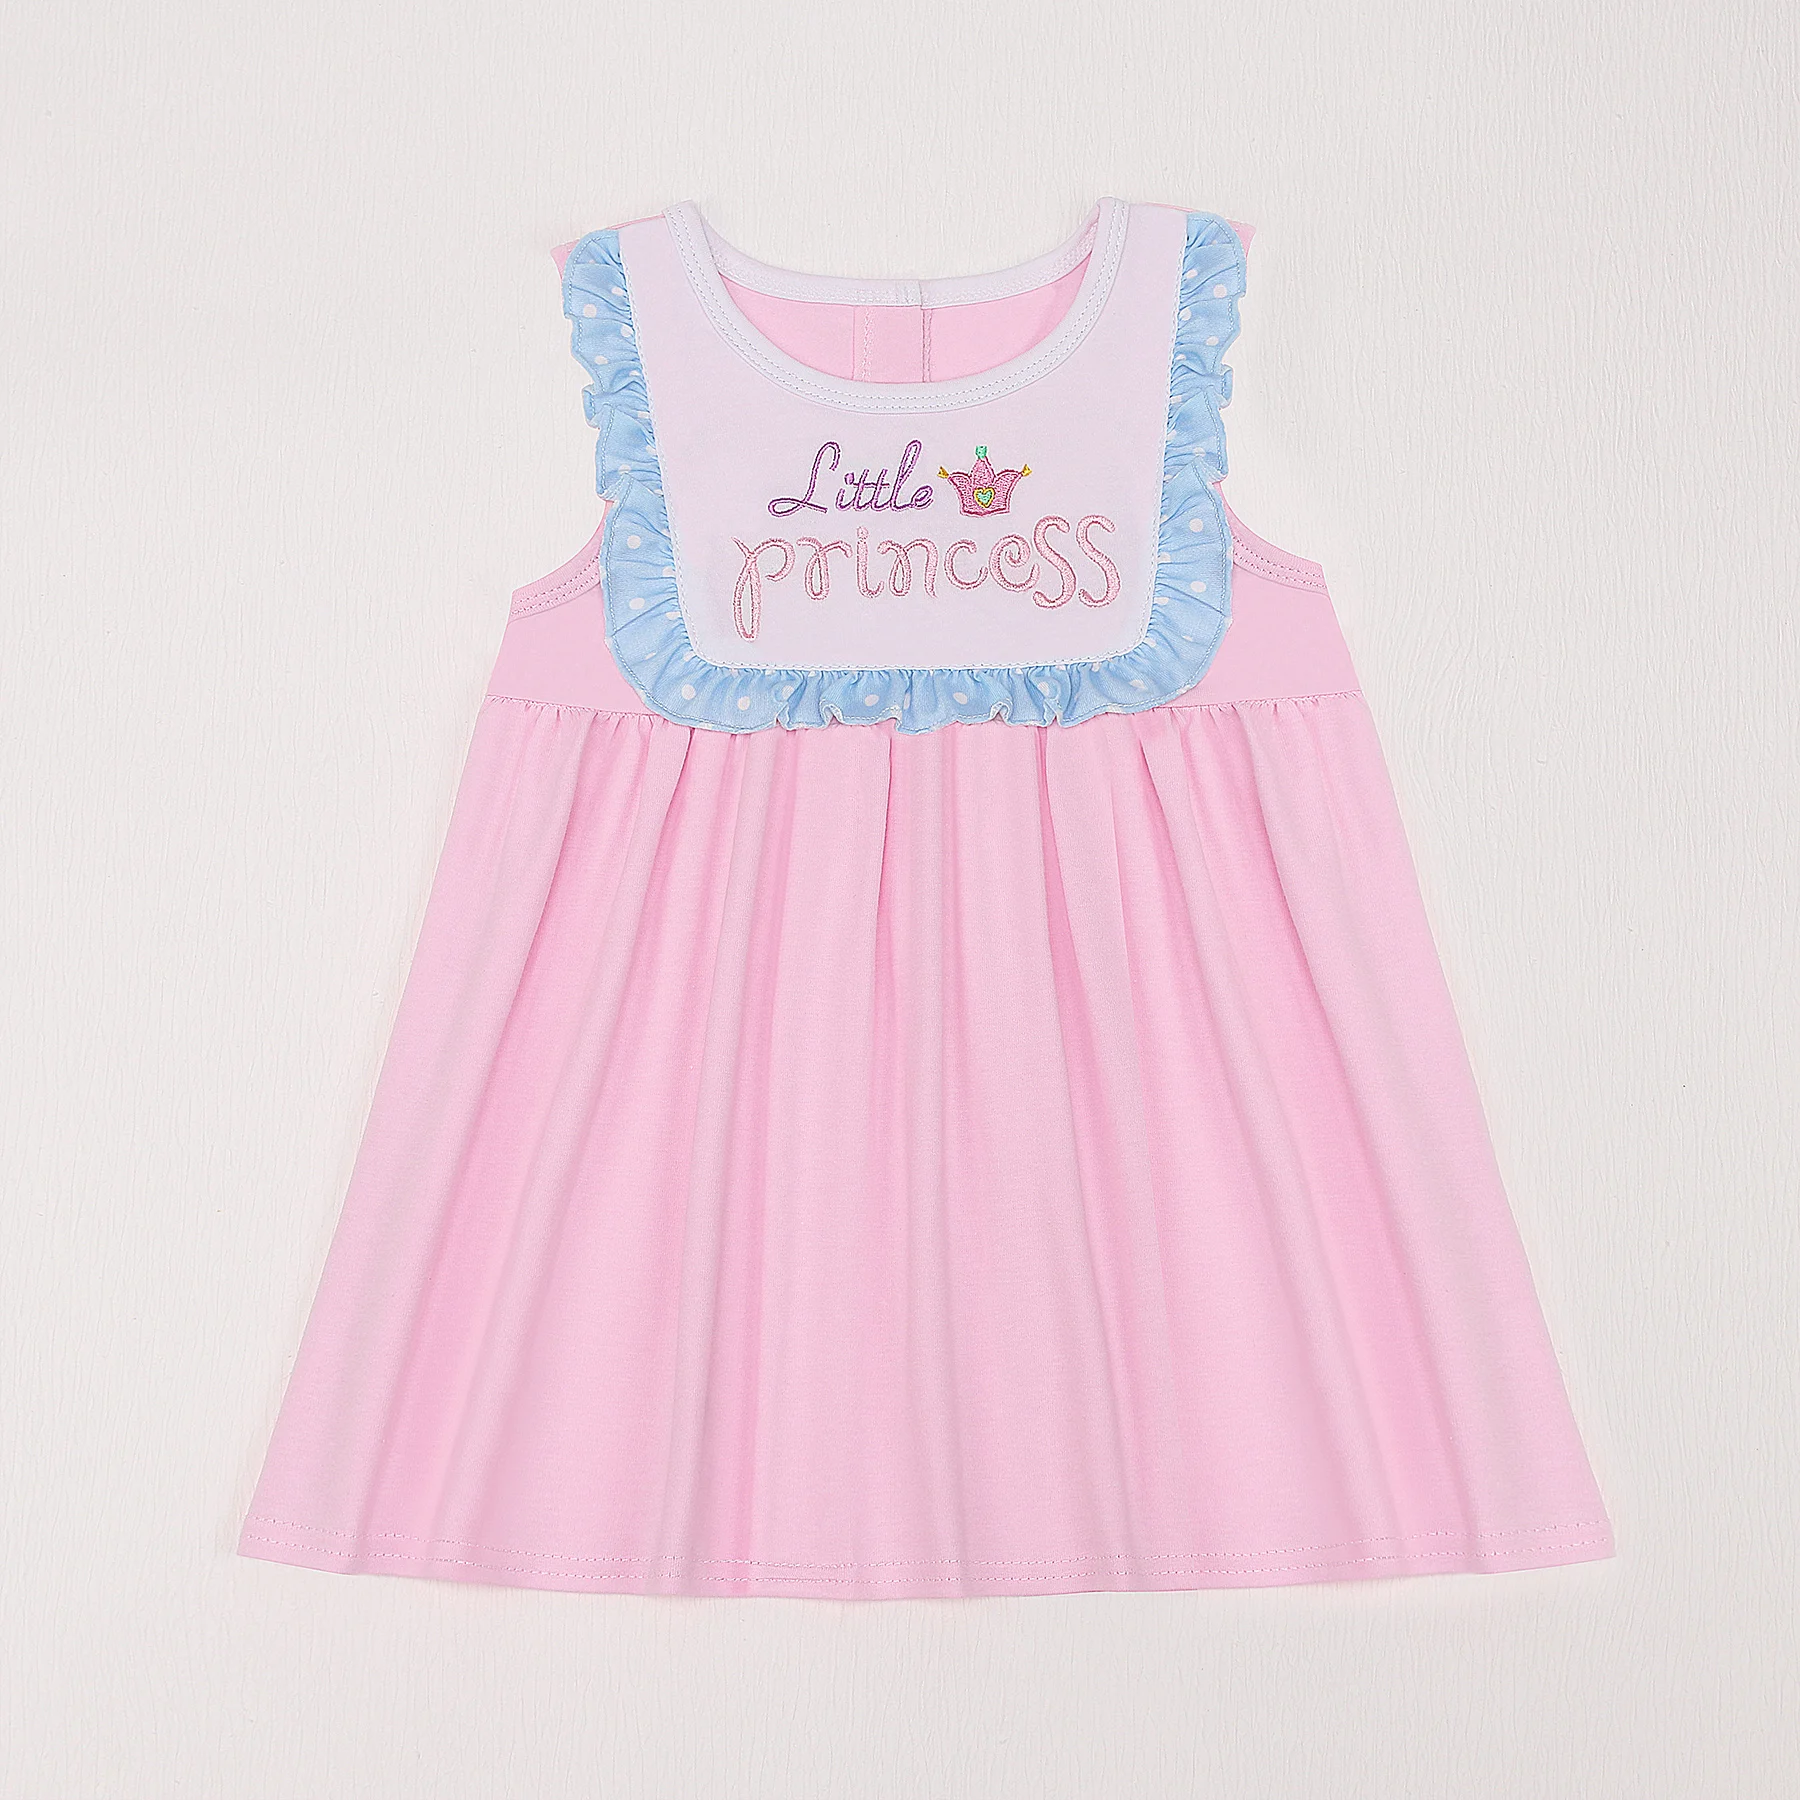 Toddler Повседневная одежда Bluey Lace Pettiskirt Одежда для девочек Платье с вышивкой принцессы 1-8T Рукав Рубашка Наряд Боди Юбка